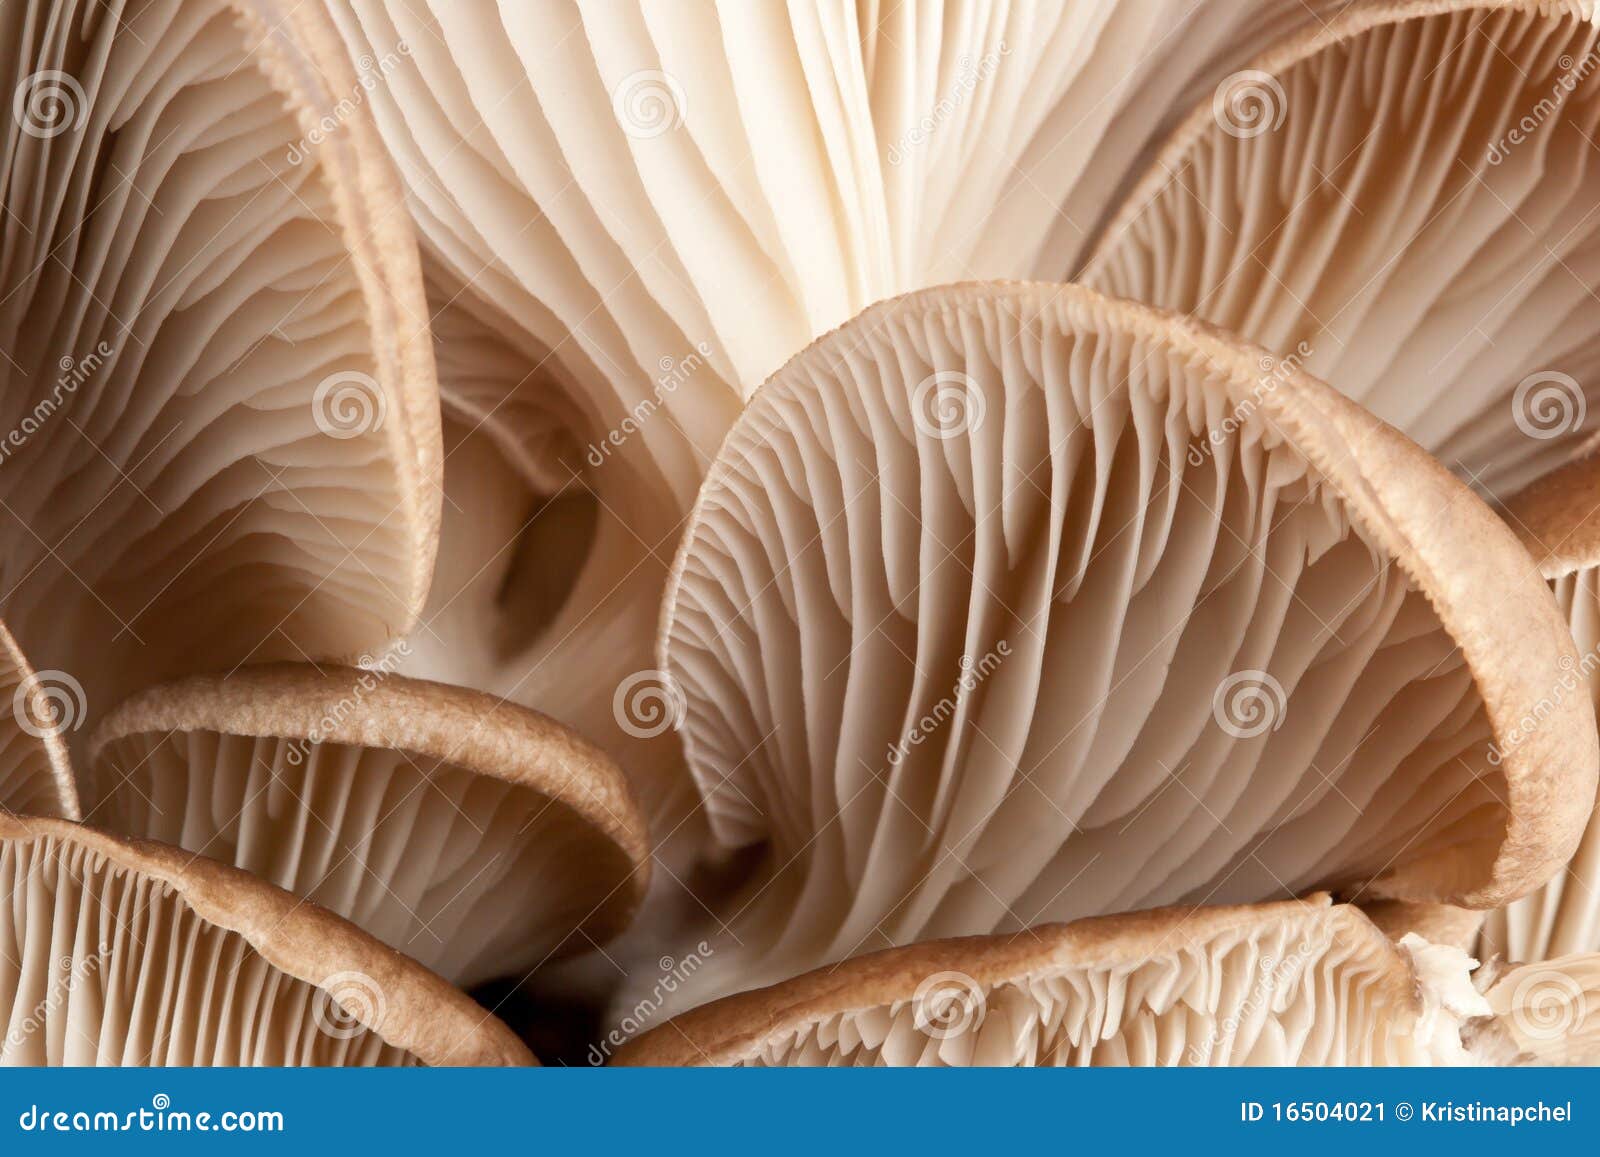 macro of mushrooms